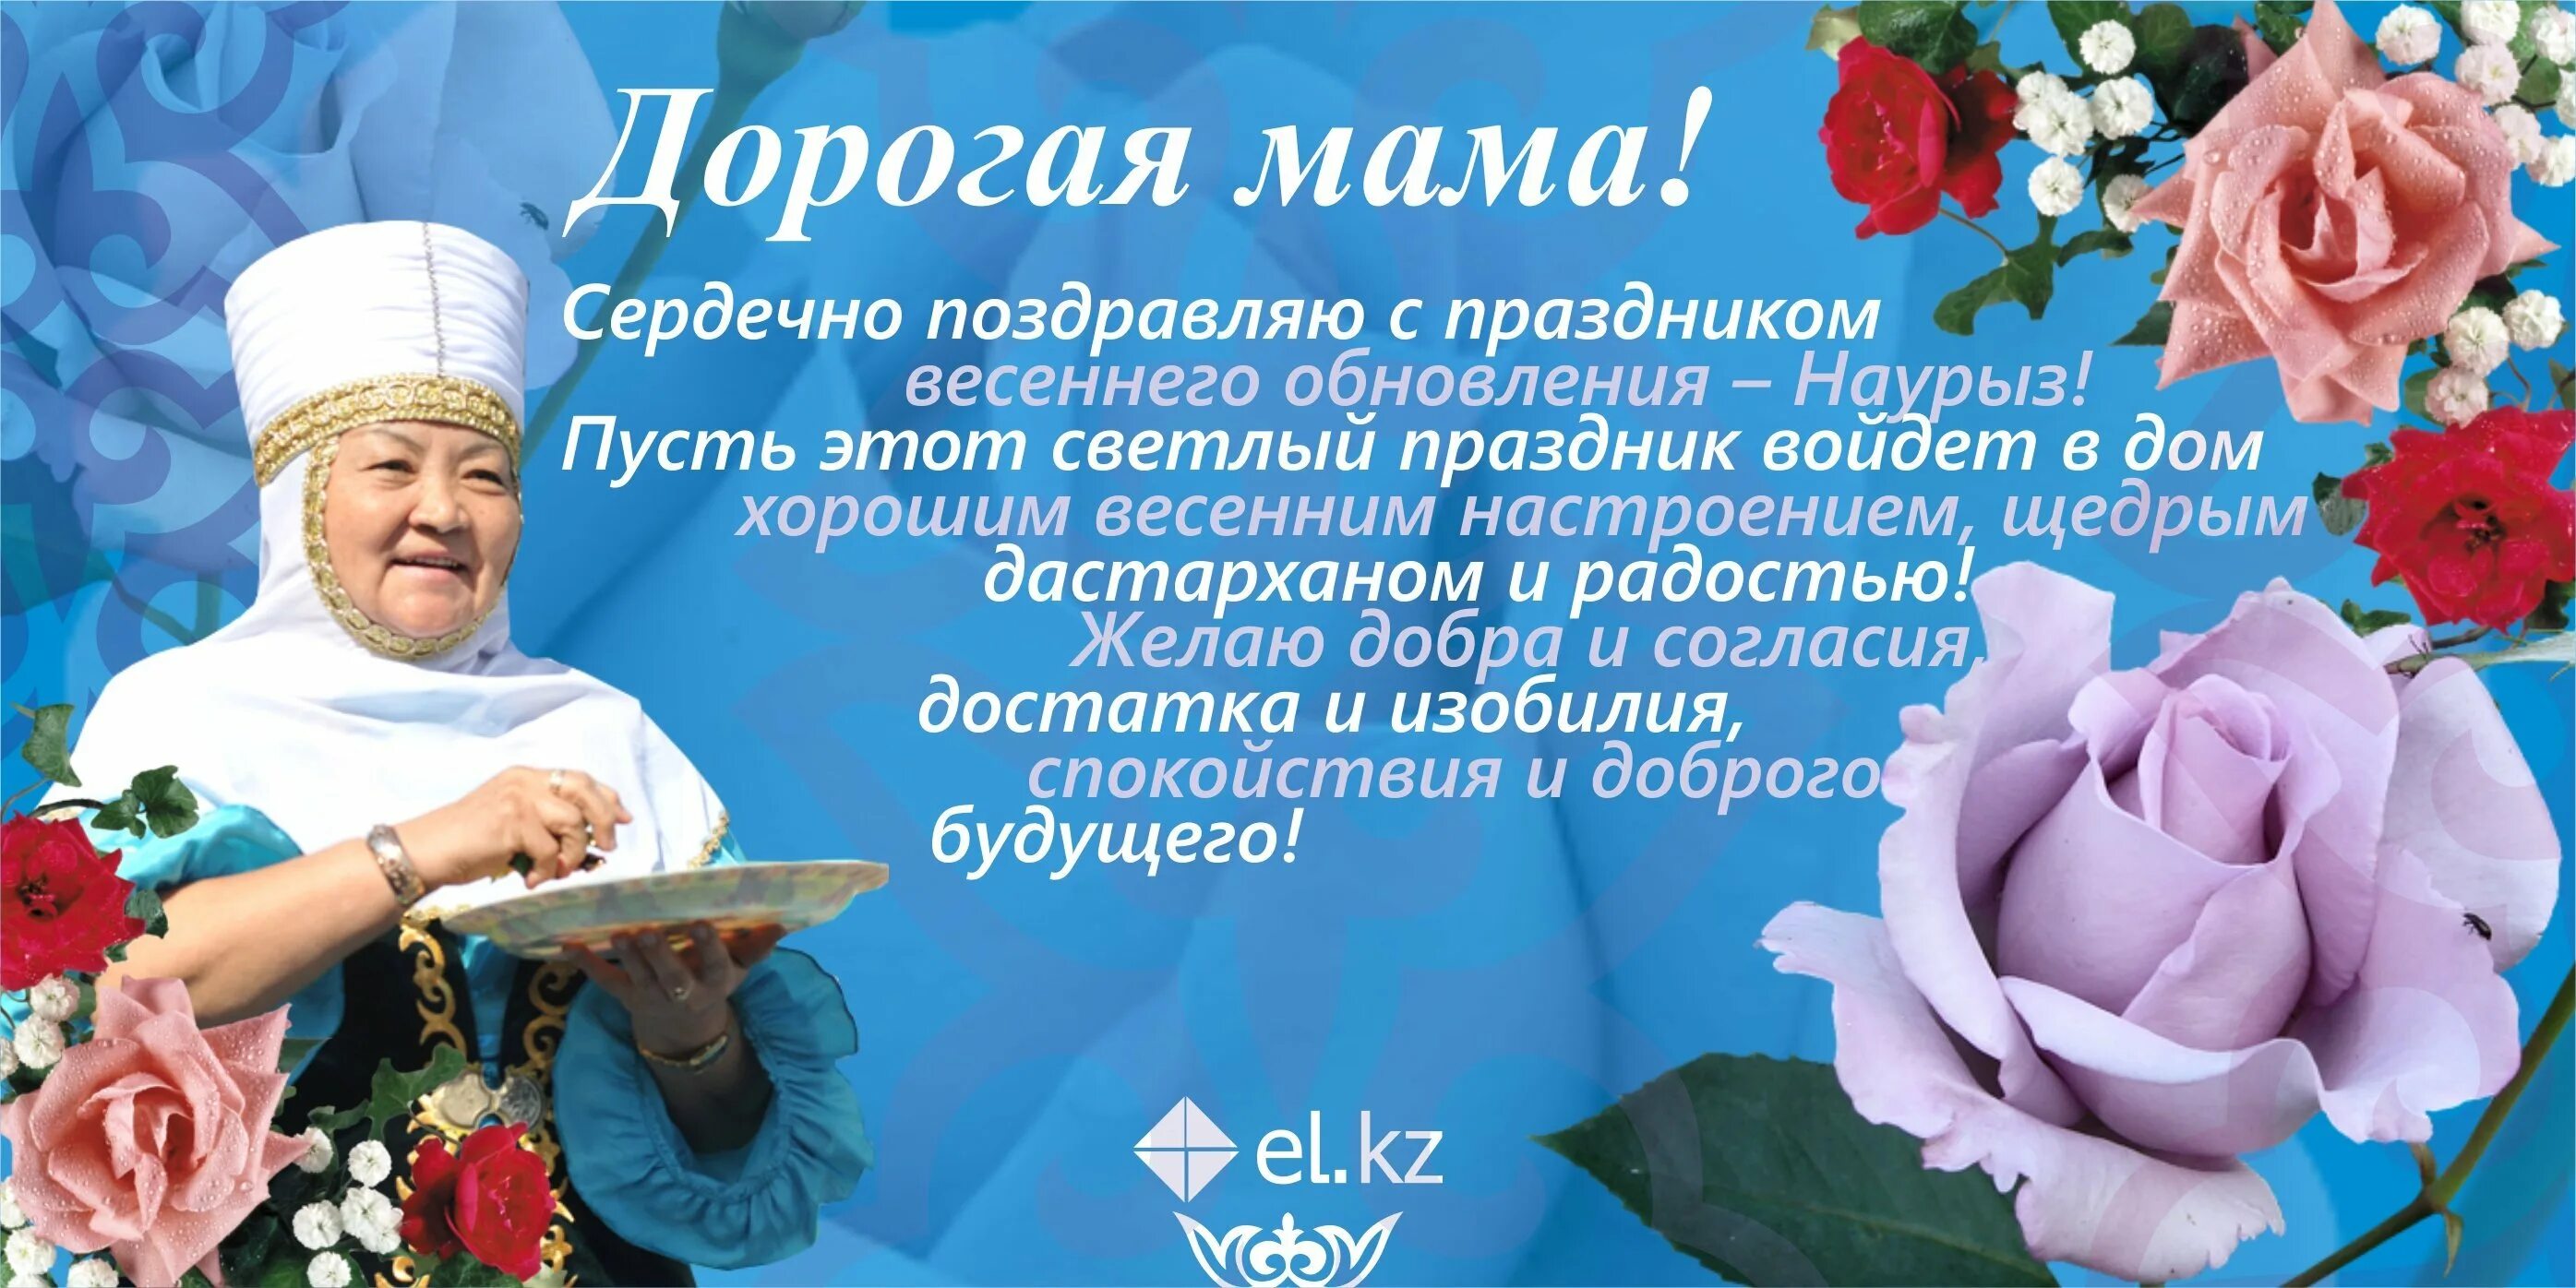 Поздравление на казахском языке красивое. Наурыз открытки. С праздником Наурыз мейрамы. Поздравление с Наурызом на казахском языке. Открытки с Наурызом на казахском.